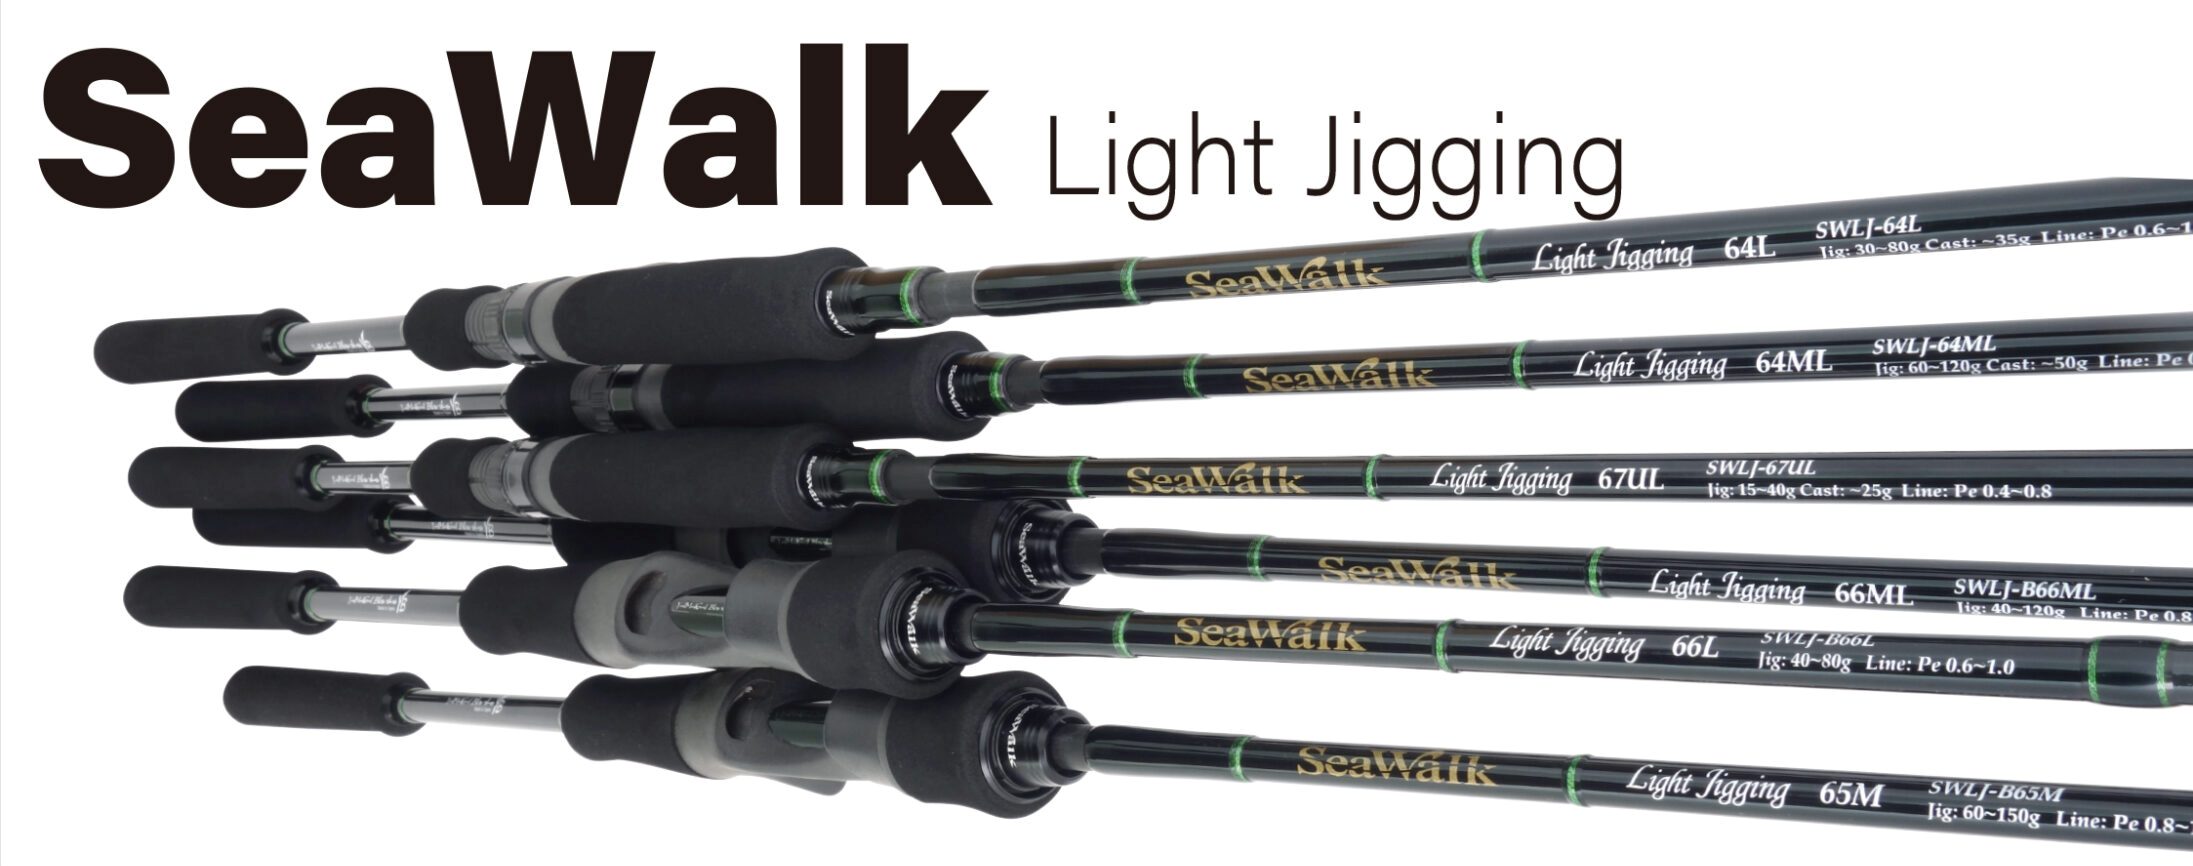 SeaWalk Light Jigging 64L